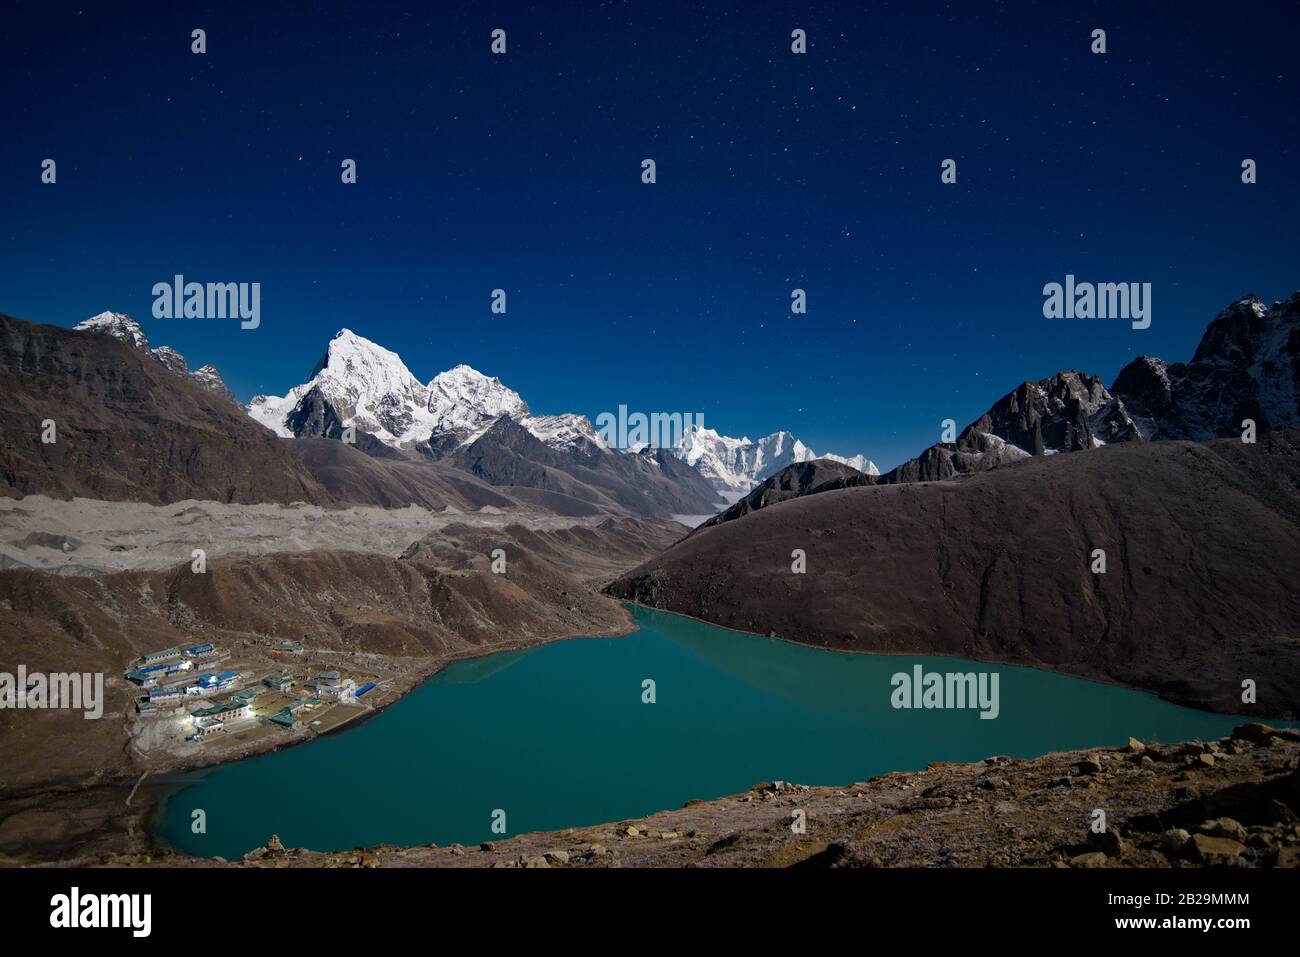 Vue nocturne sur le lac de Gokyo entouré de montagnes enneigées de l'Himalaya au Népal Banque D'Images